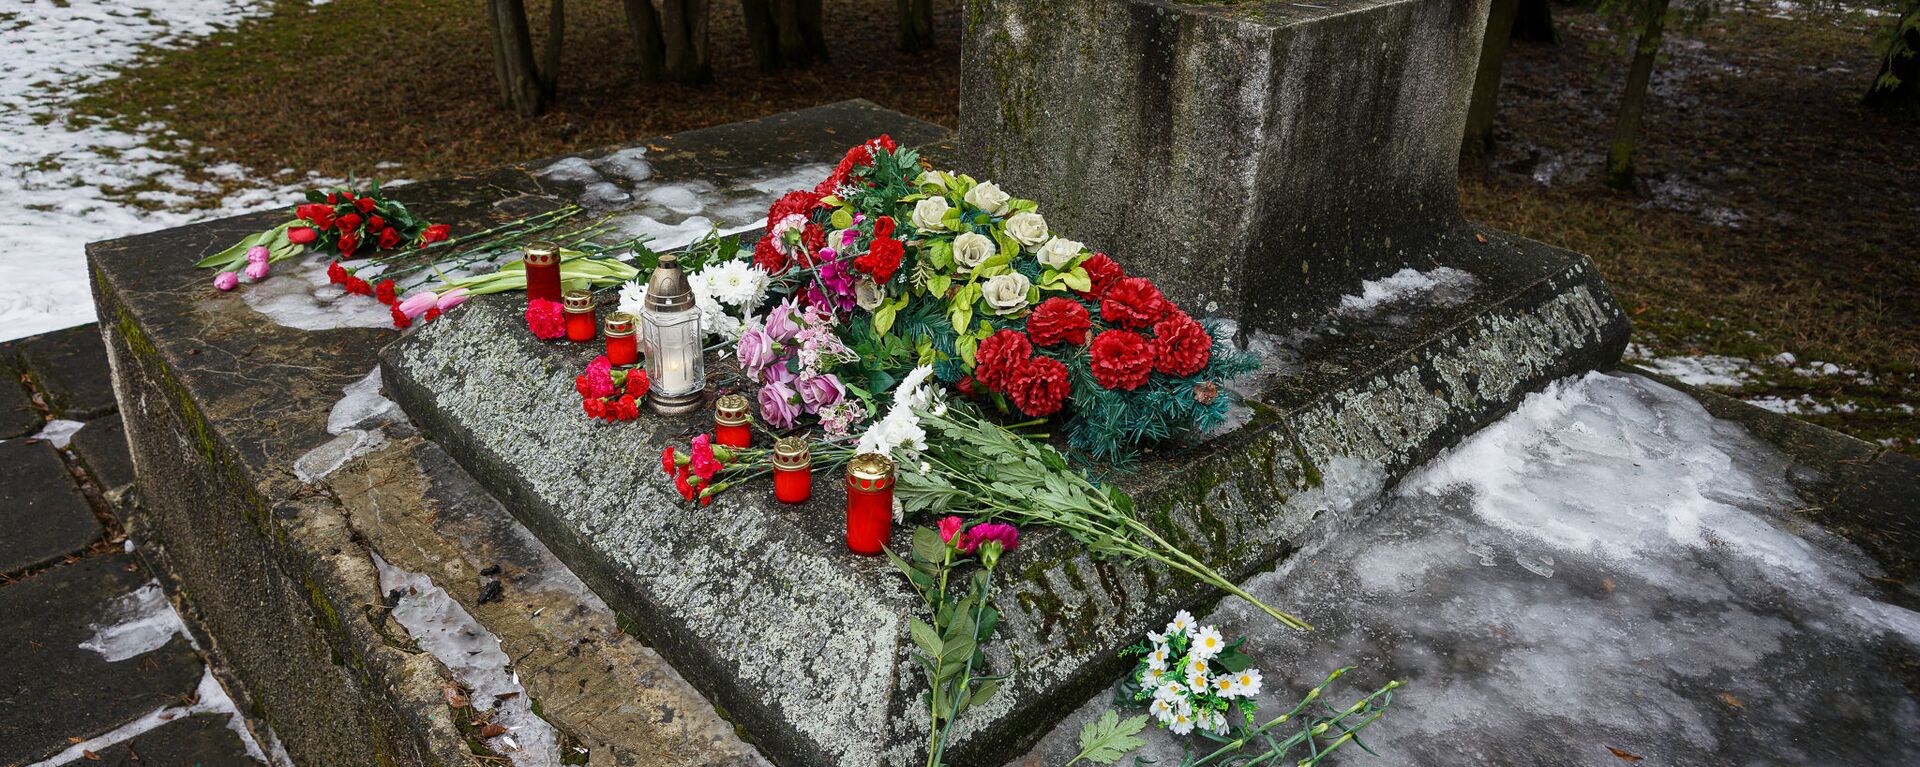 В ночь на 24 февраля в Екабпилсе вандалы украли пушку ЗиС-3 с могилы героев-освободителей Екабпилса от нацистских захватчиков - Sputnik Latvija, 1920, 27.02.2021